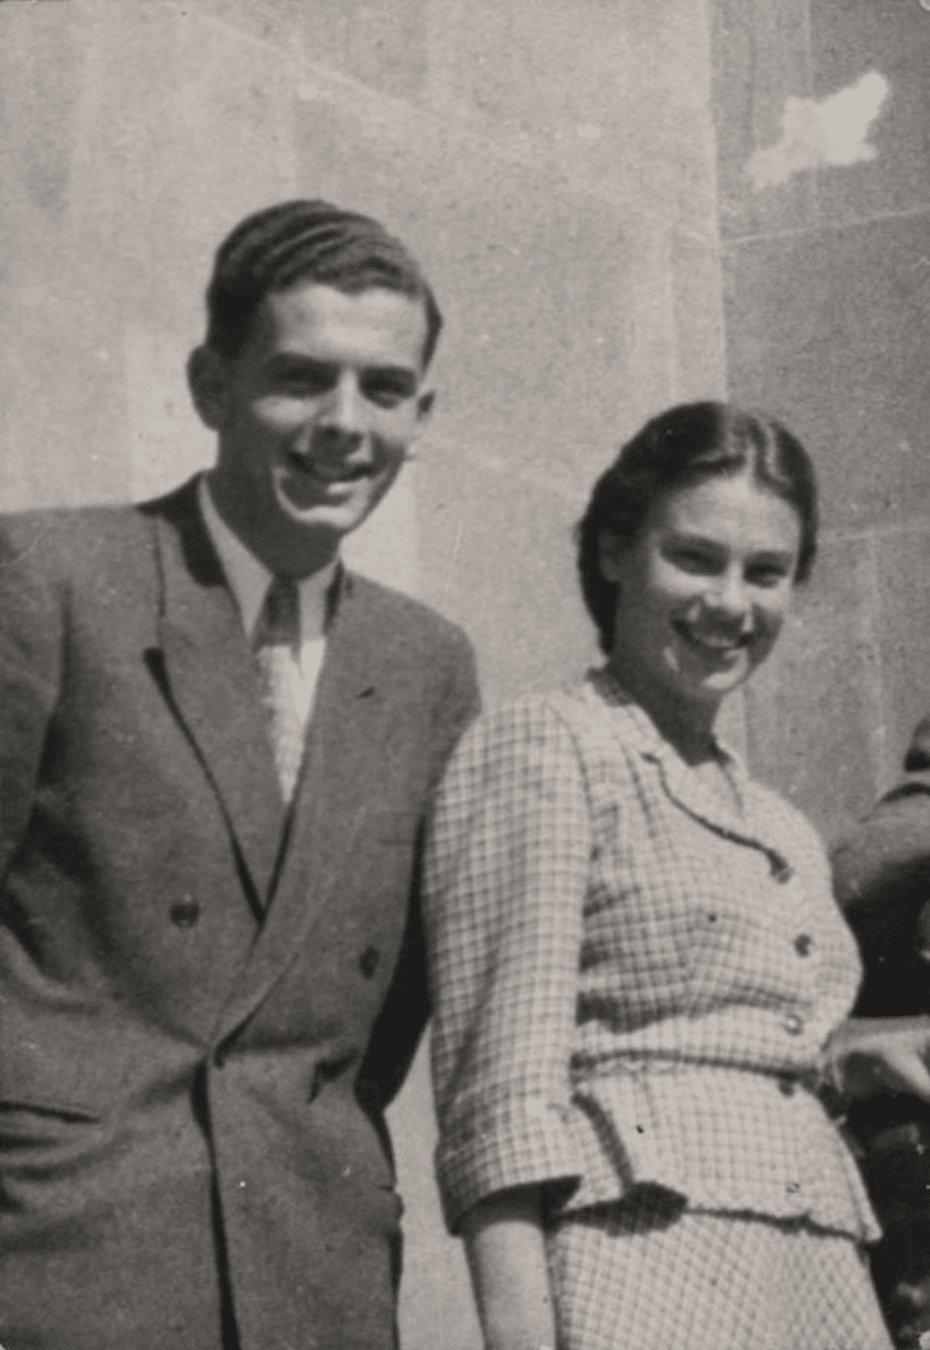 Alexander i jego żona Judith w Koszycach, Słowacja, 1948 r.